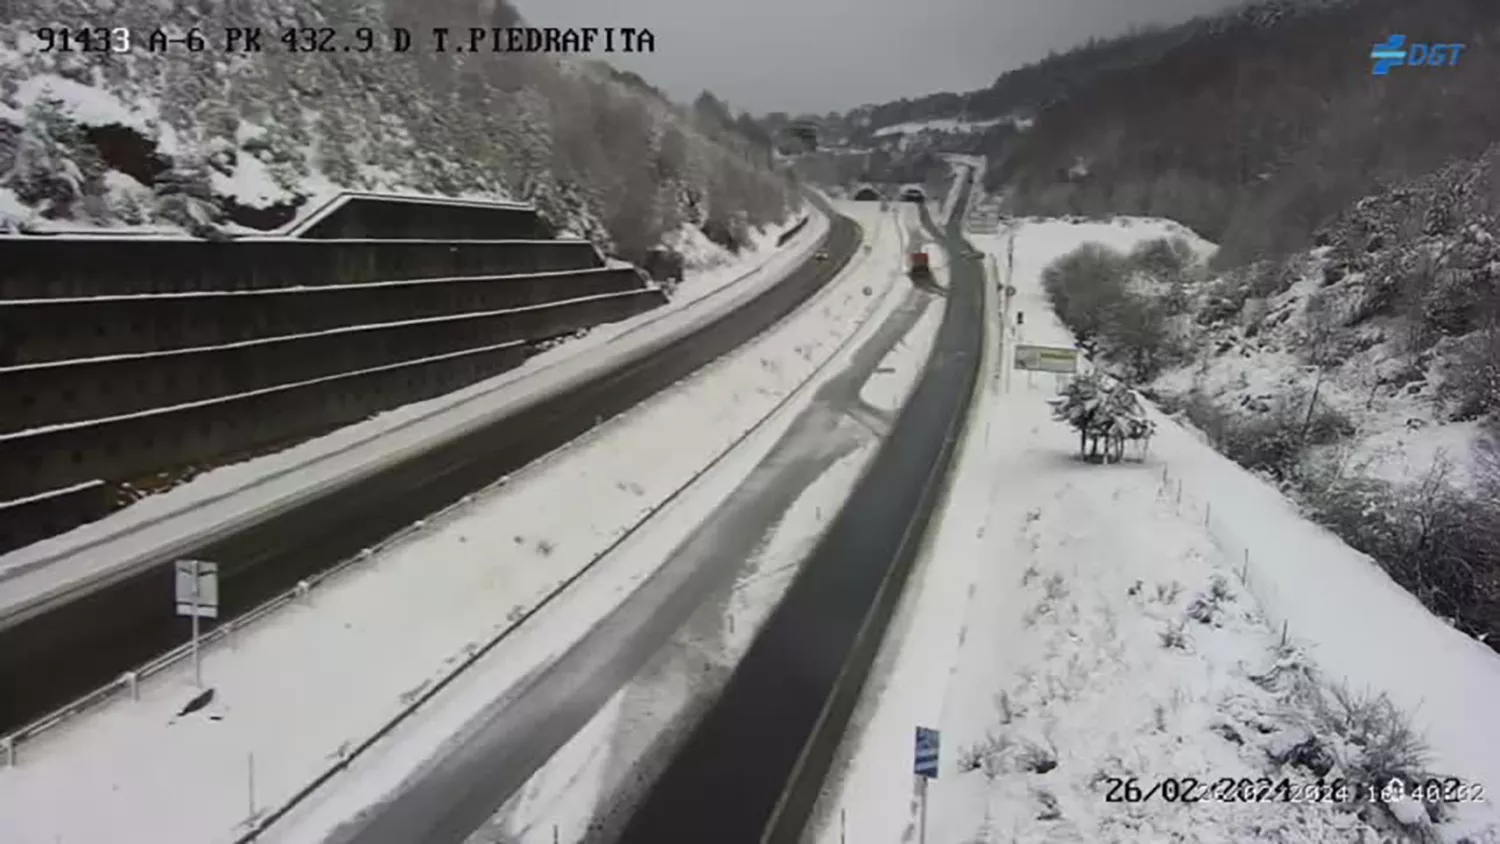 La nieve obliga a embolsar 40 camiones en la A 6 a la altura de Vega de Valcarce 